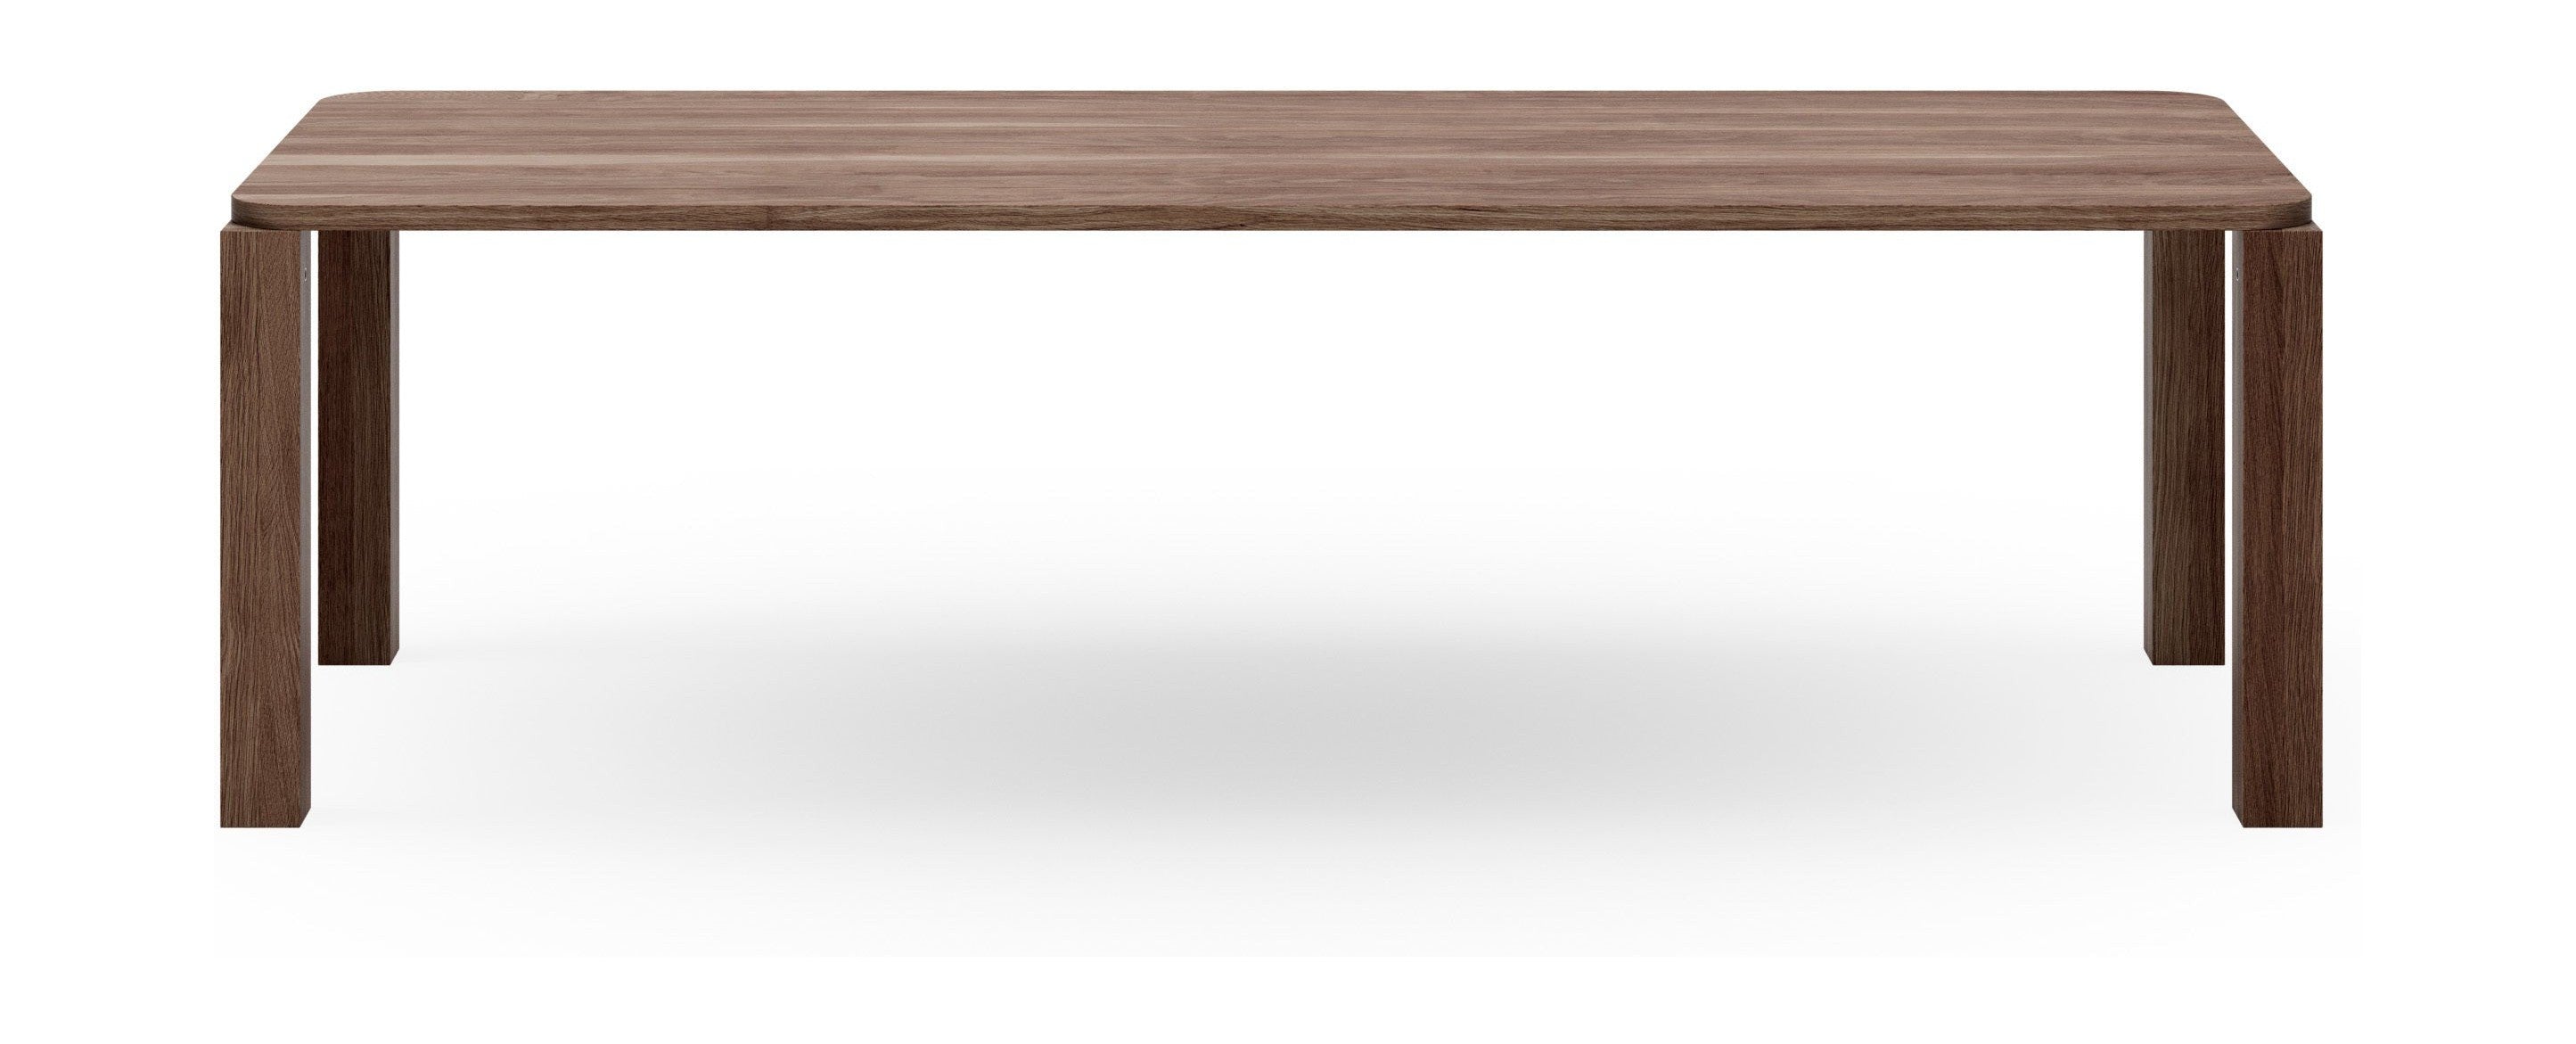 New Works Atlas Dining Table Fumed Oak, 250x95 Cm